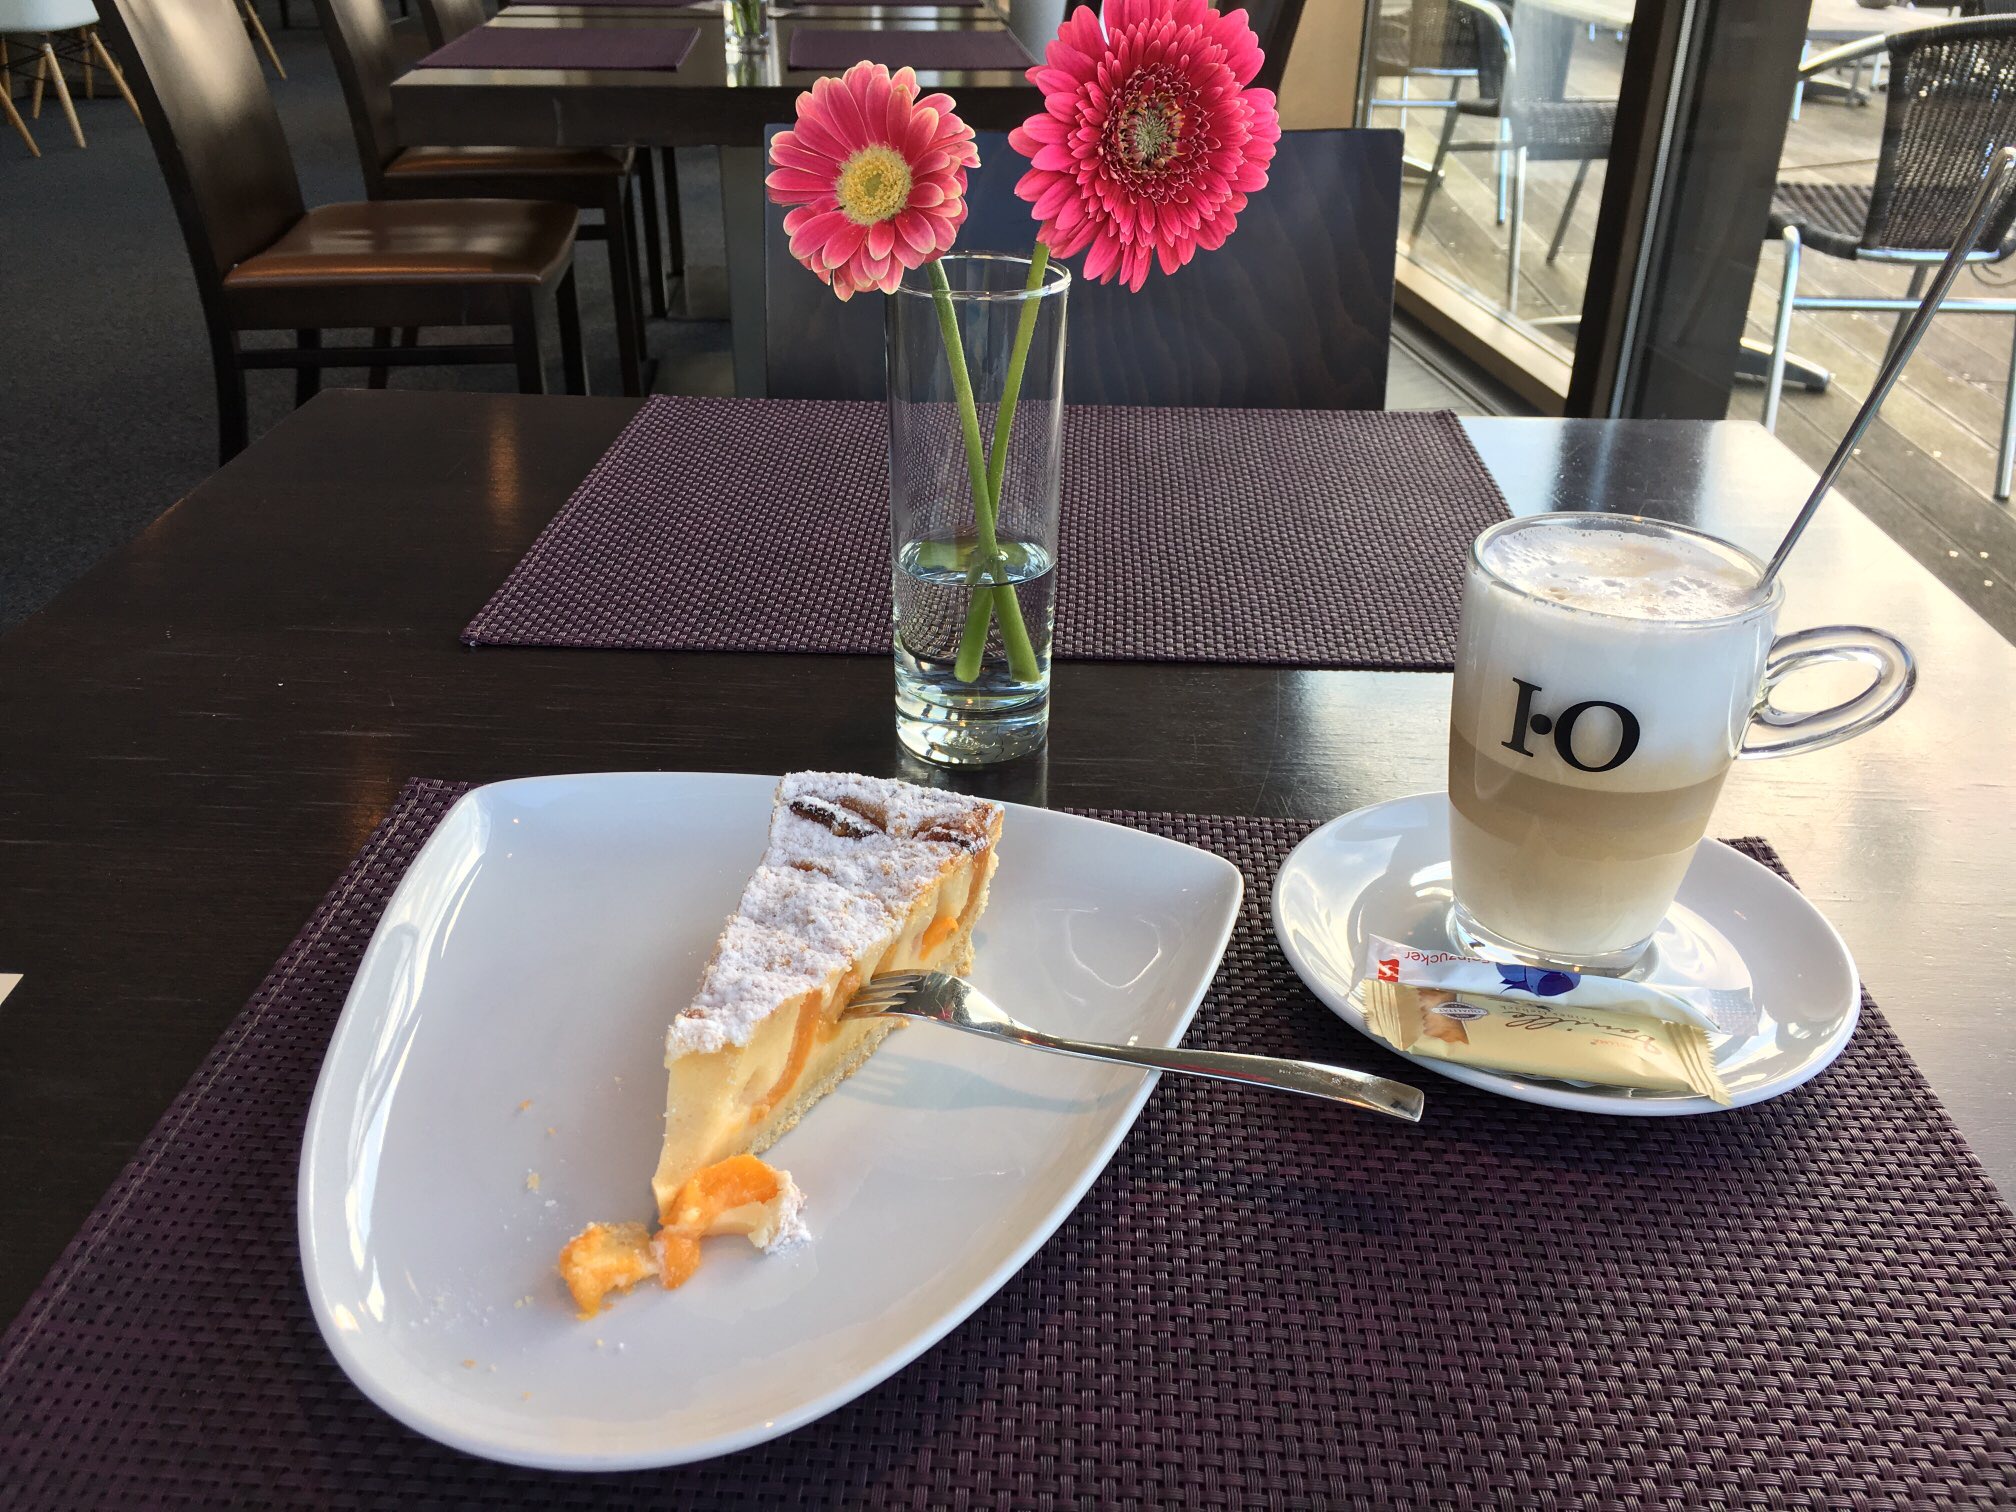 Aprikosenkuchen und Latte Macchiato (&euro; 6.-)